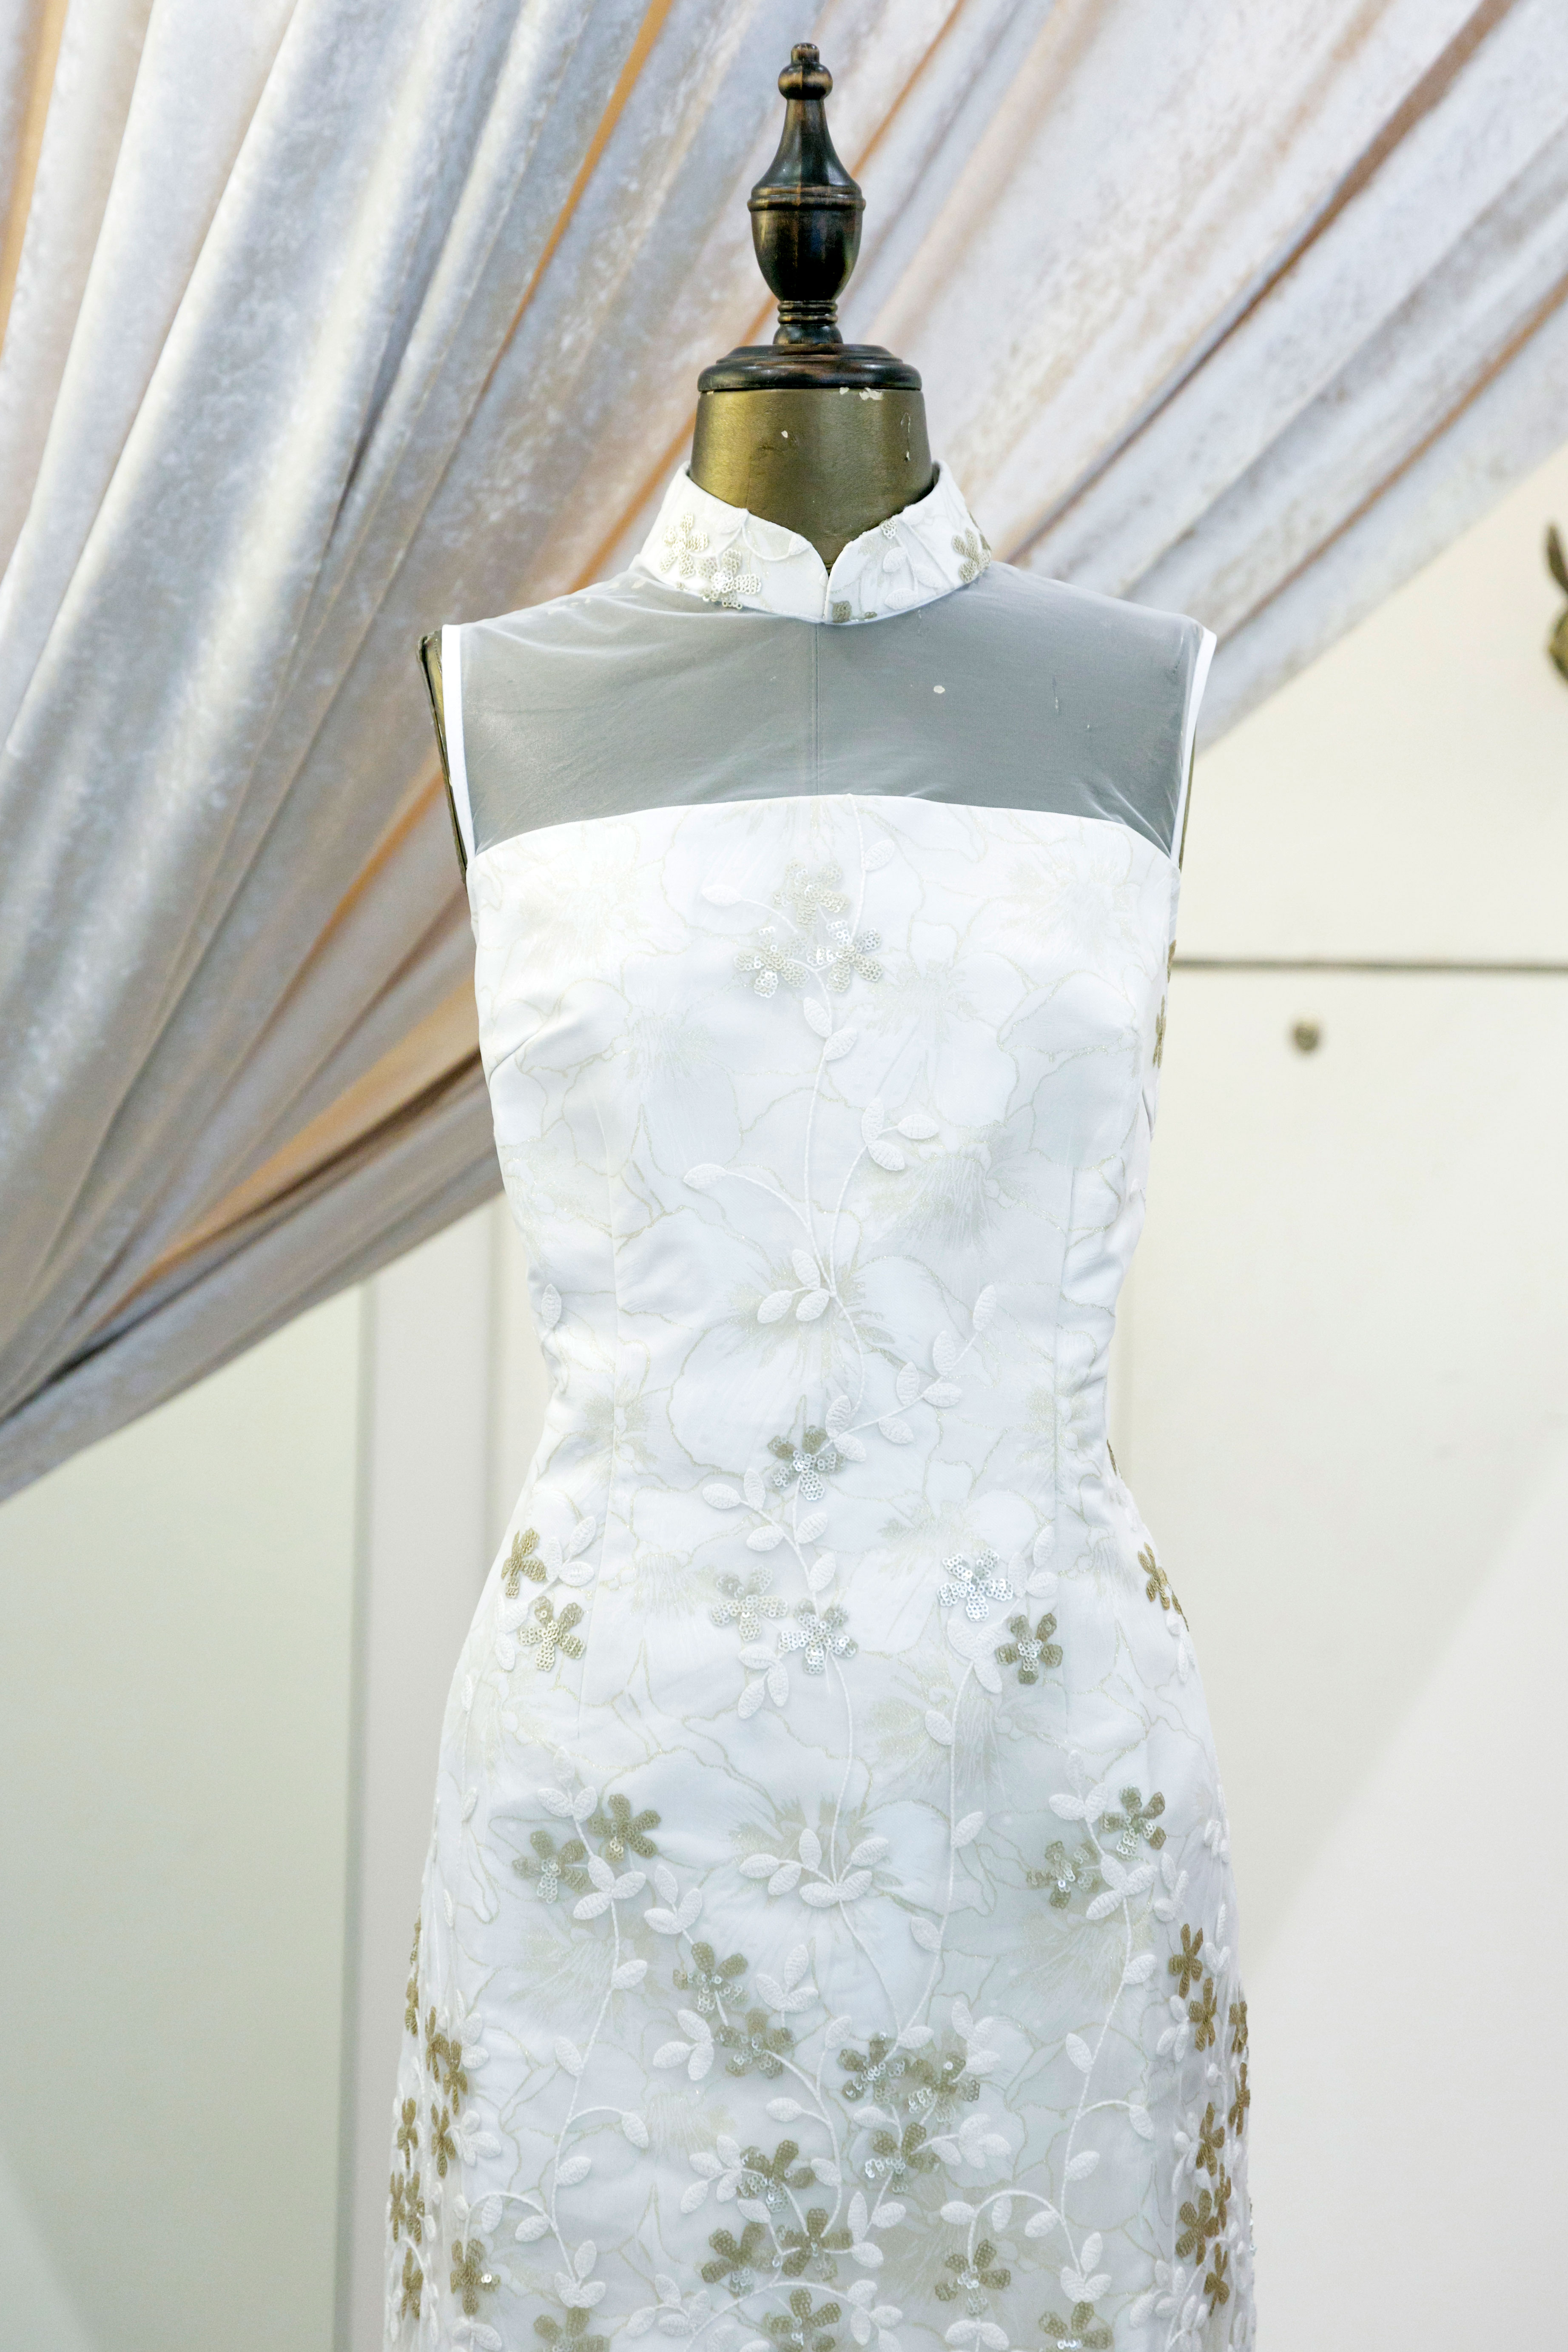 淡く輝くホワイトゴールドのドレスは華やかで清楚な雰囲気。4,380香港ドル。